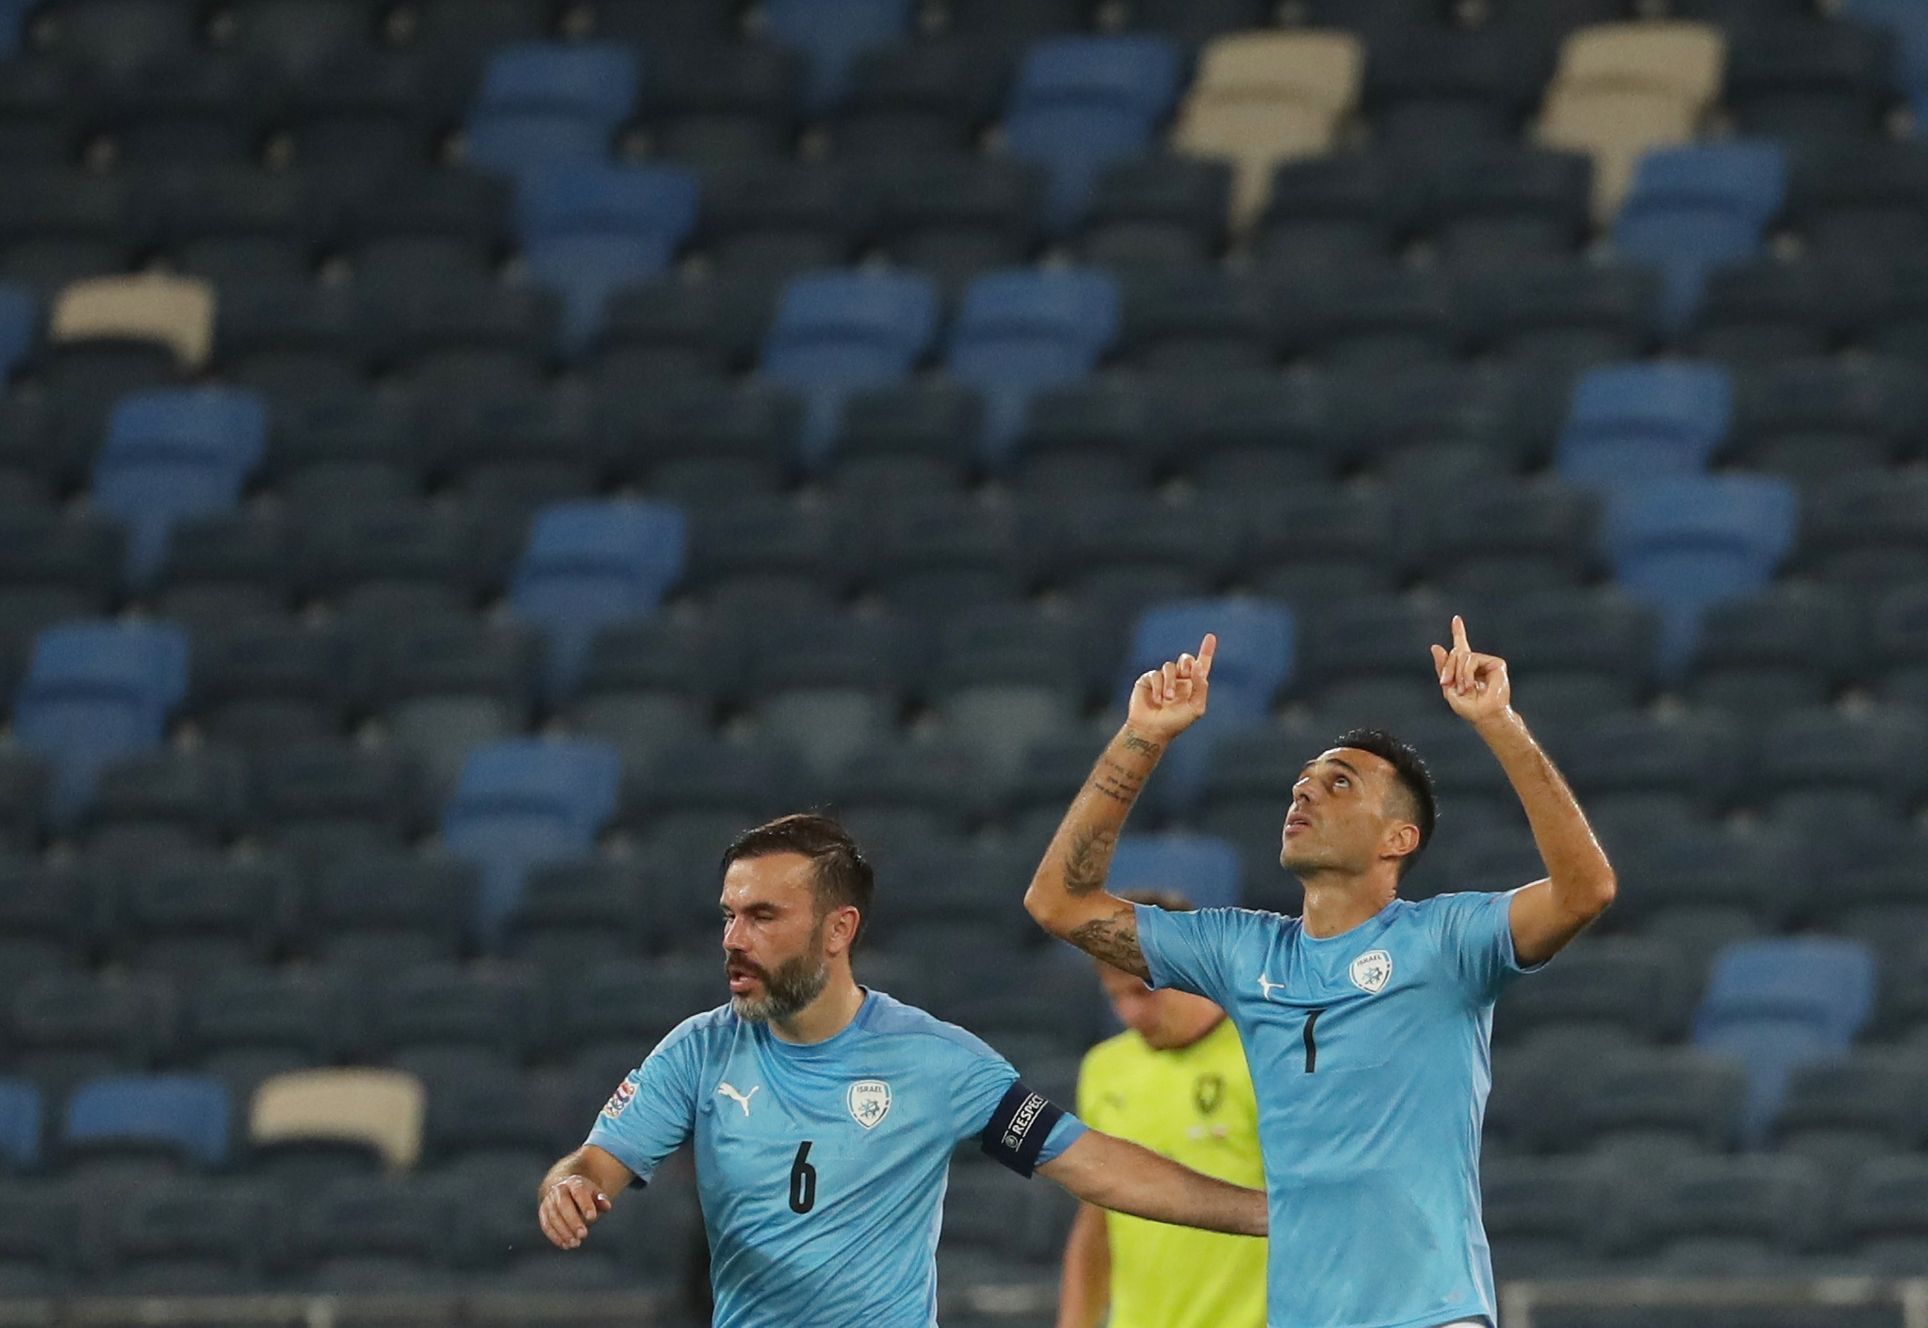 Eran Zahavi slaví gól v zápase Ligy národů Izrael - Česko